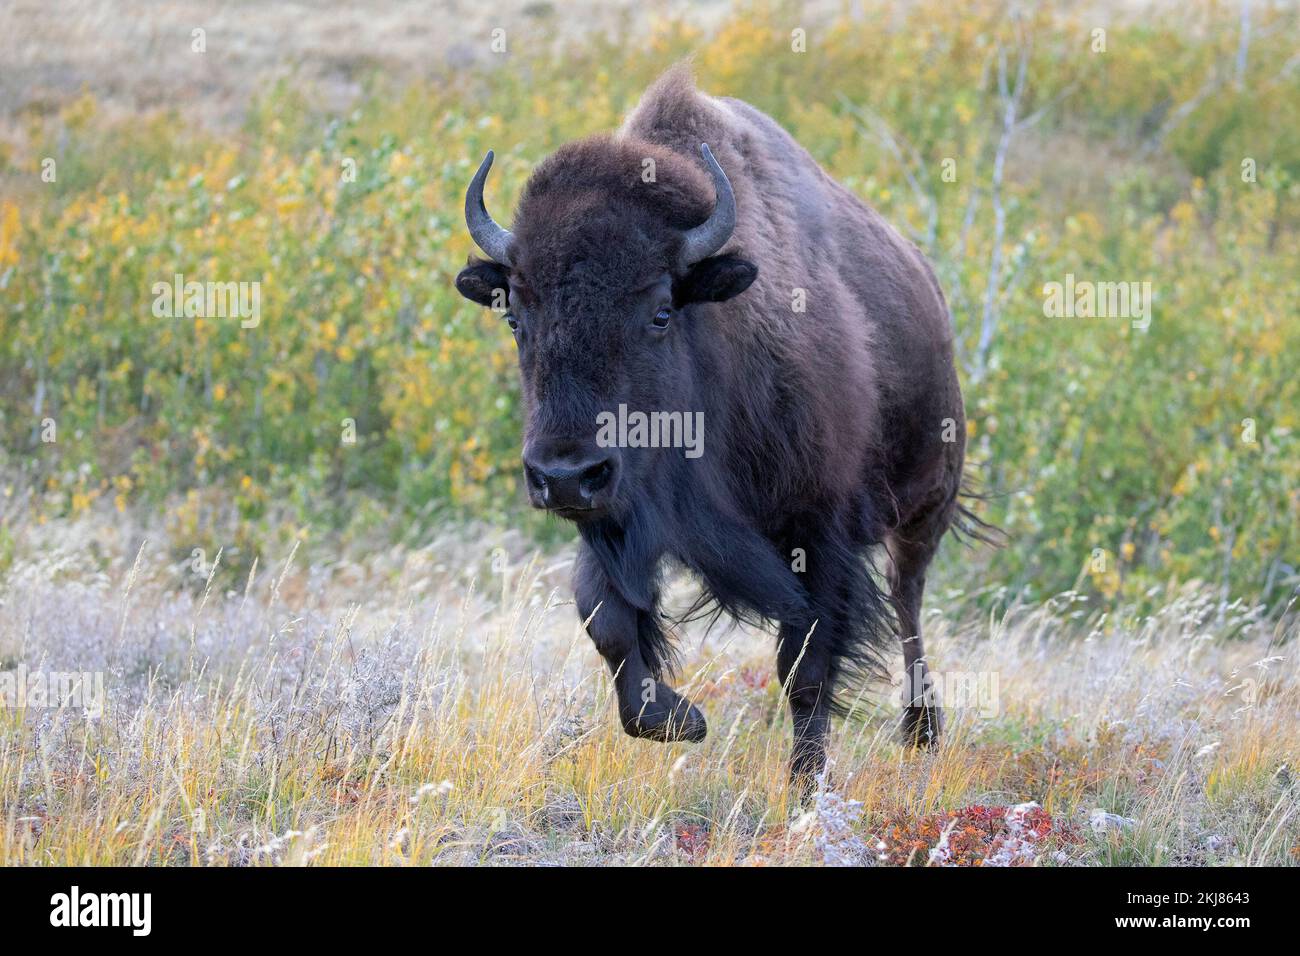 Vache de bison des plaines traversant des herbes dans le parc national des Lacs-Waterton, Canada (Bison bison) Banque D'Images